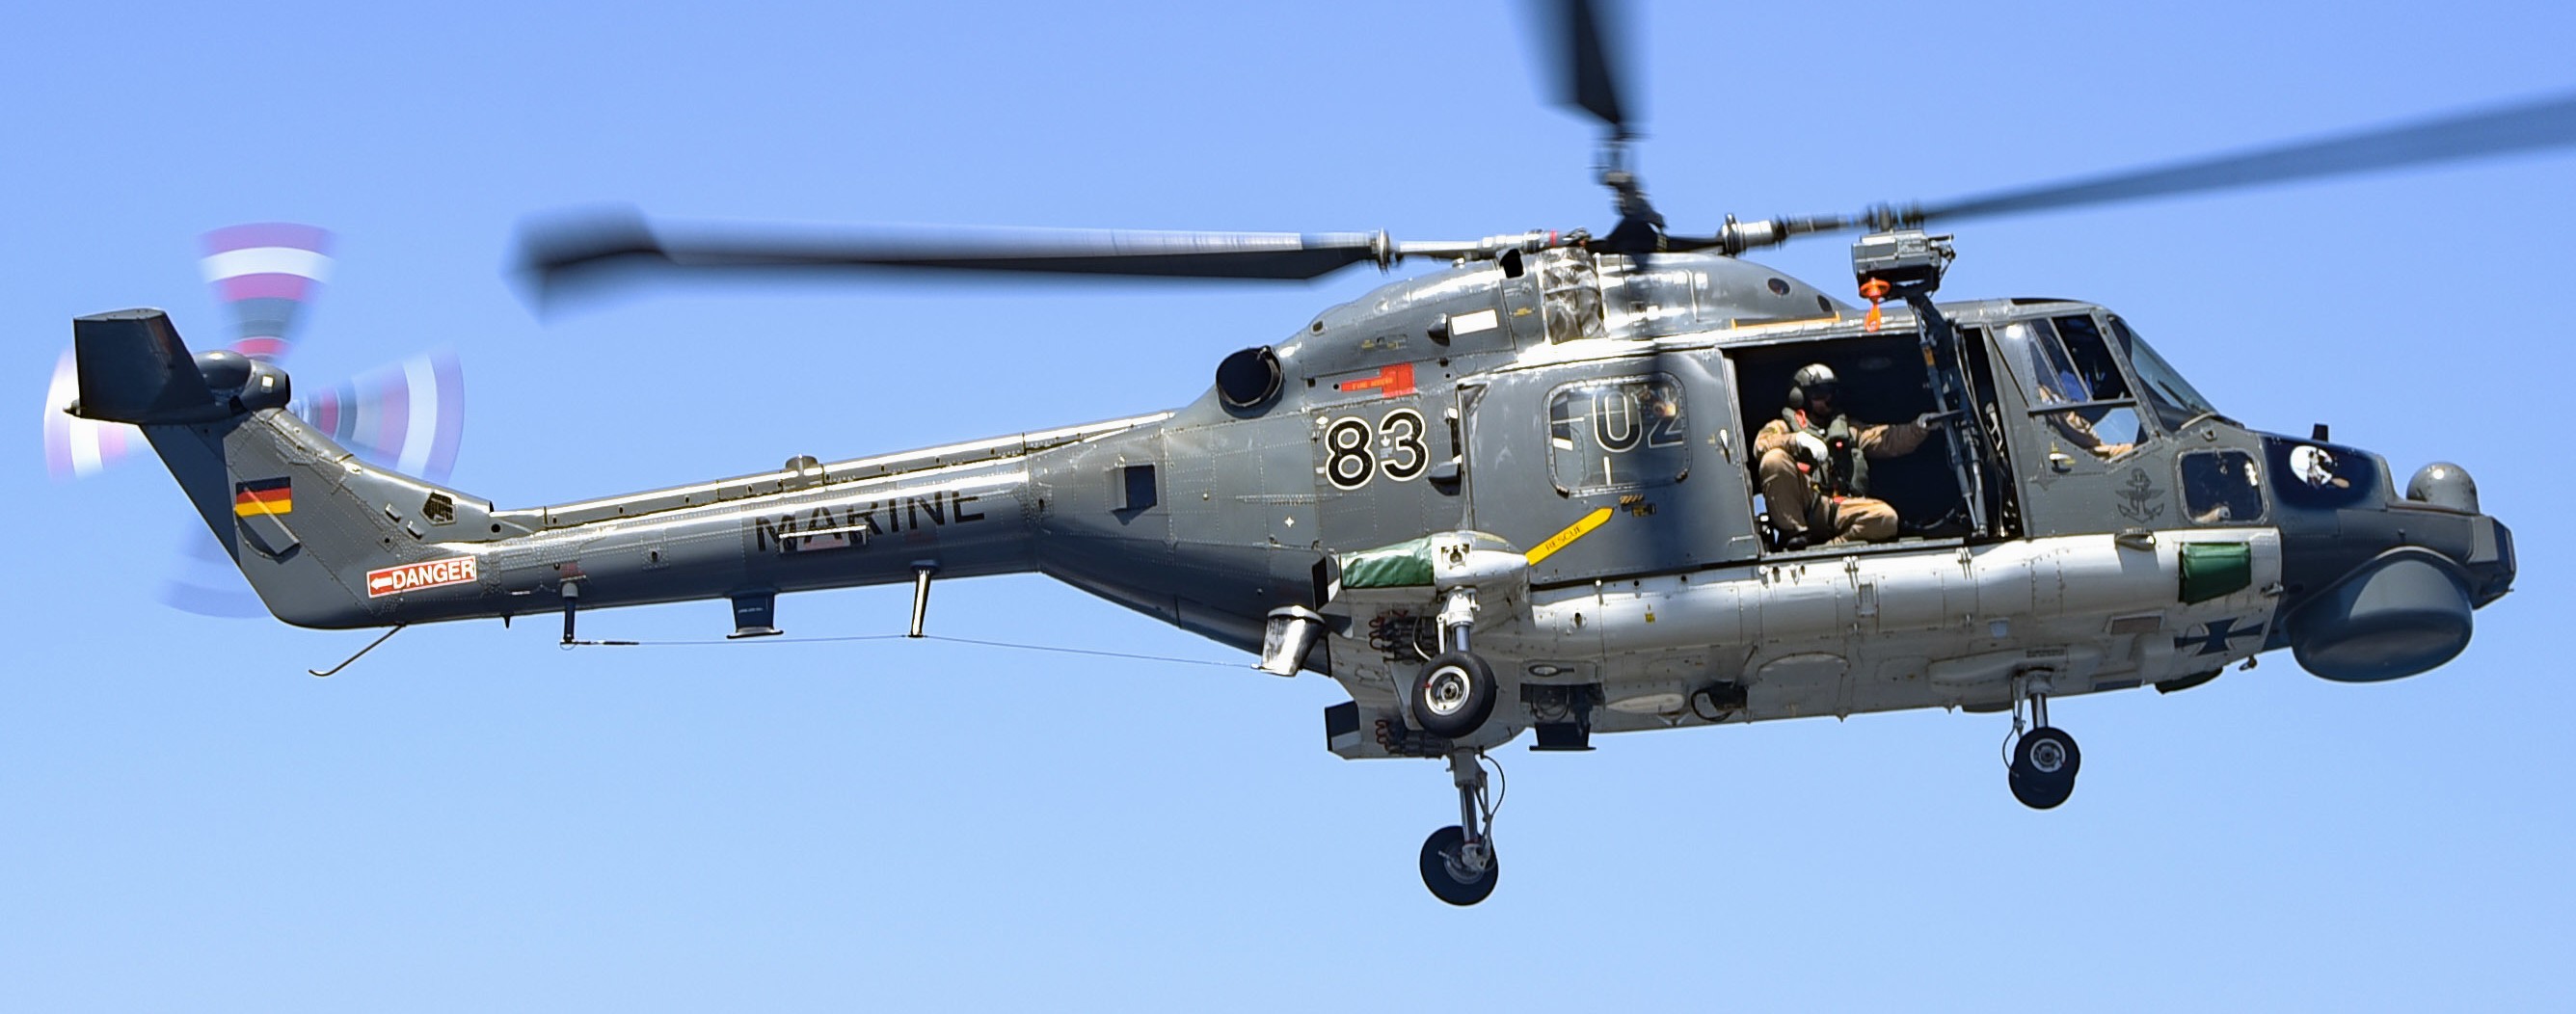 sea lynx mk.88a westland naval helicopter german navy deutsche marine 41